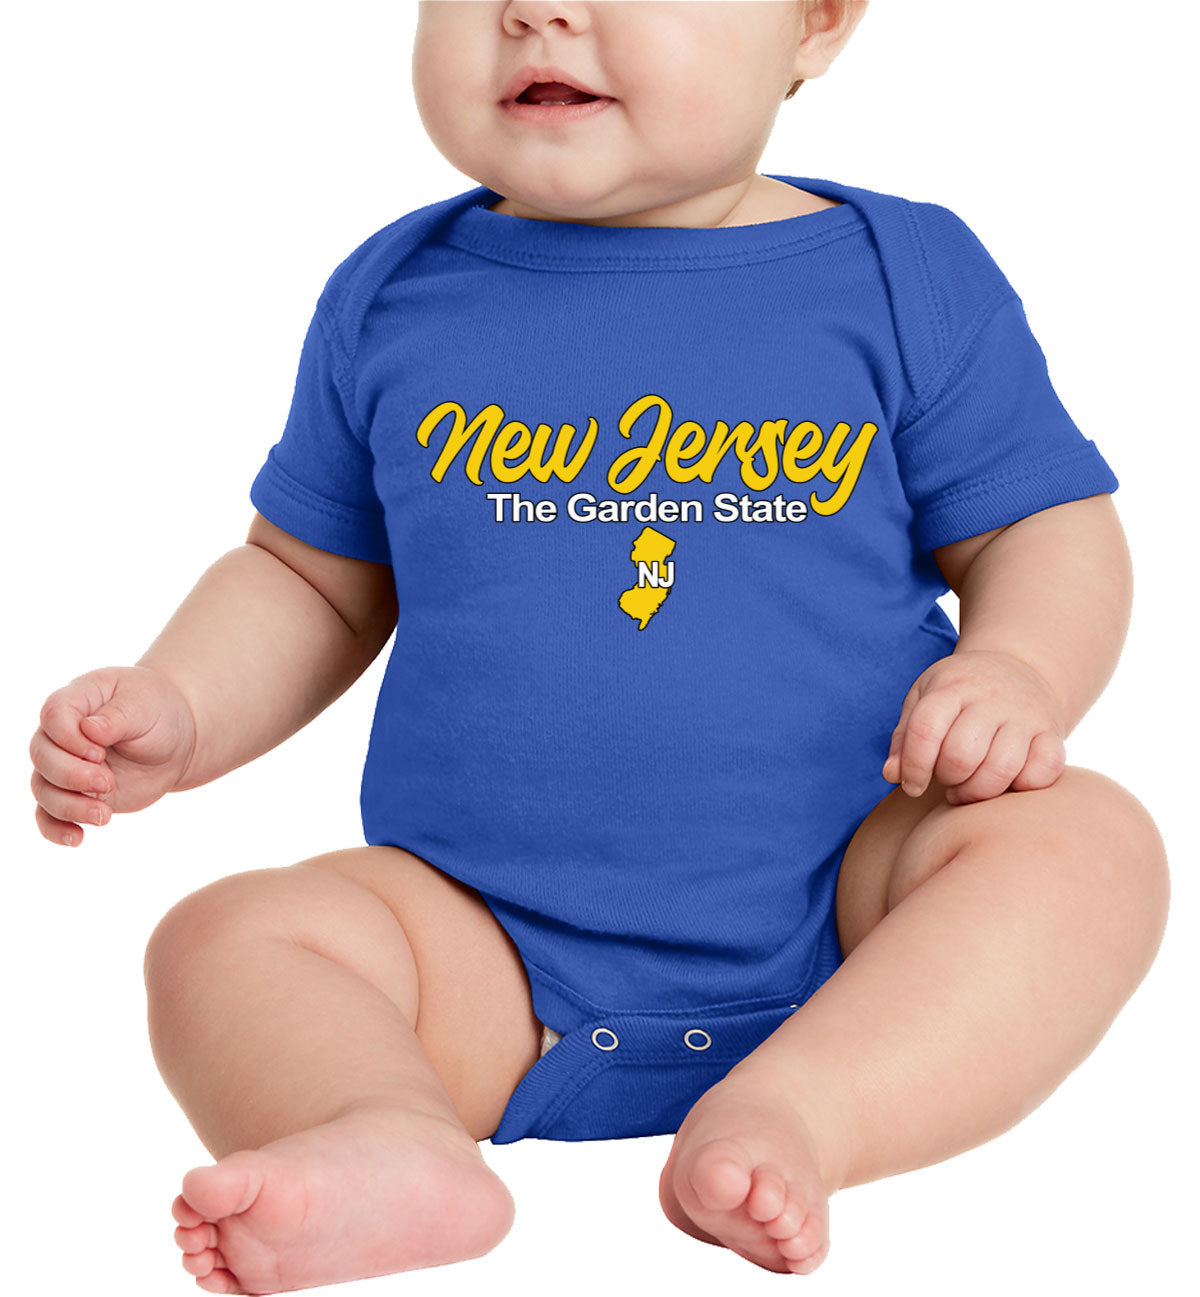 New Jersey The Garden State Baby Onesie